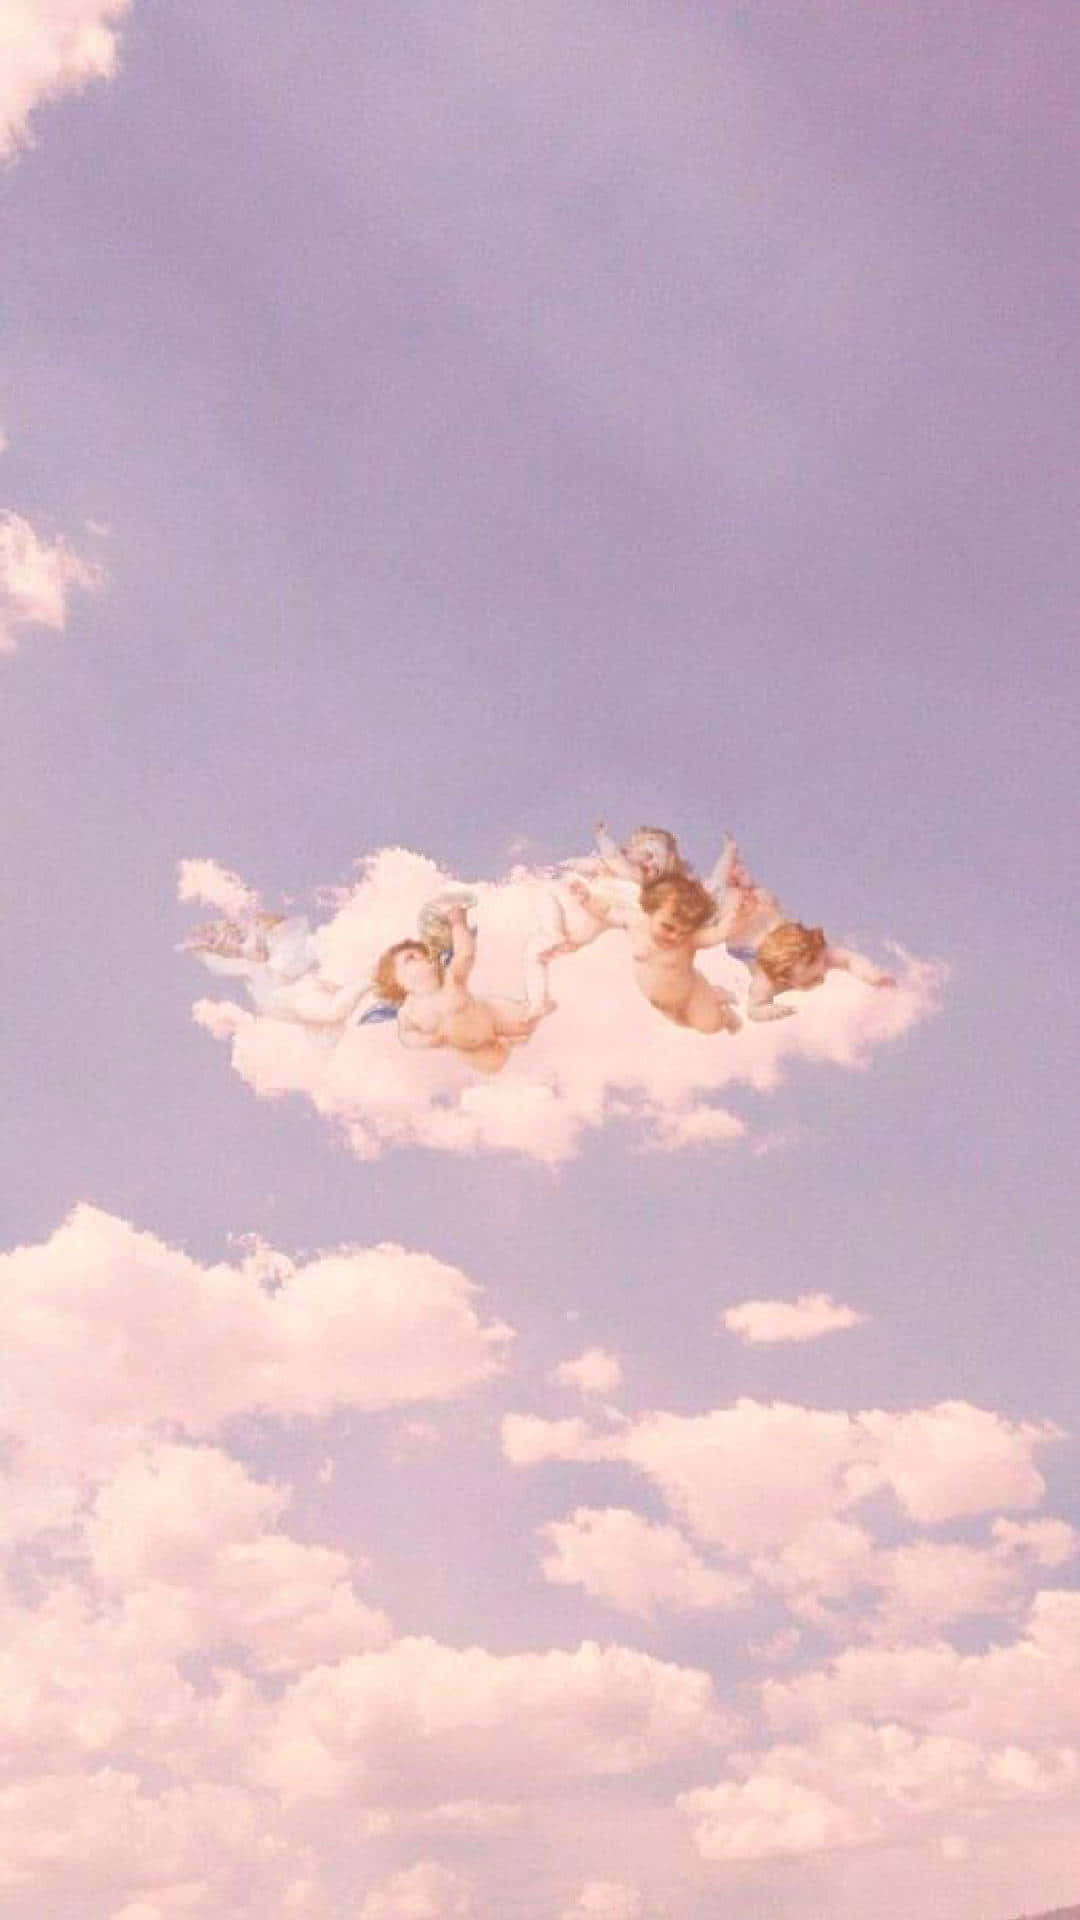 Vintage Angel Clouds Aesthetic.jpg Wallpaper